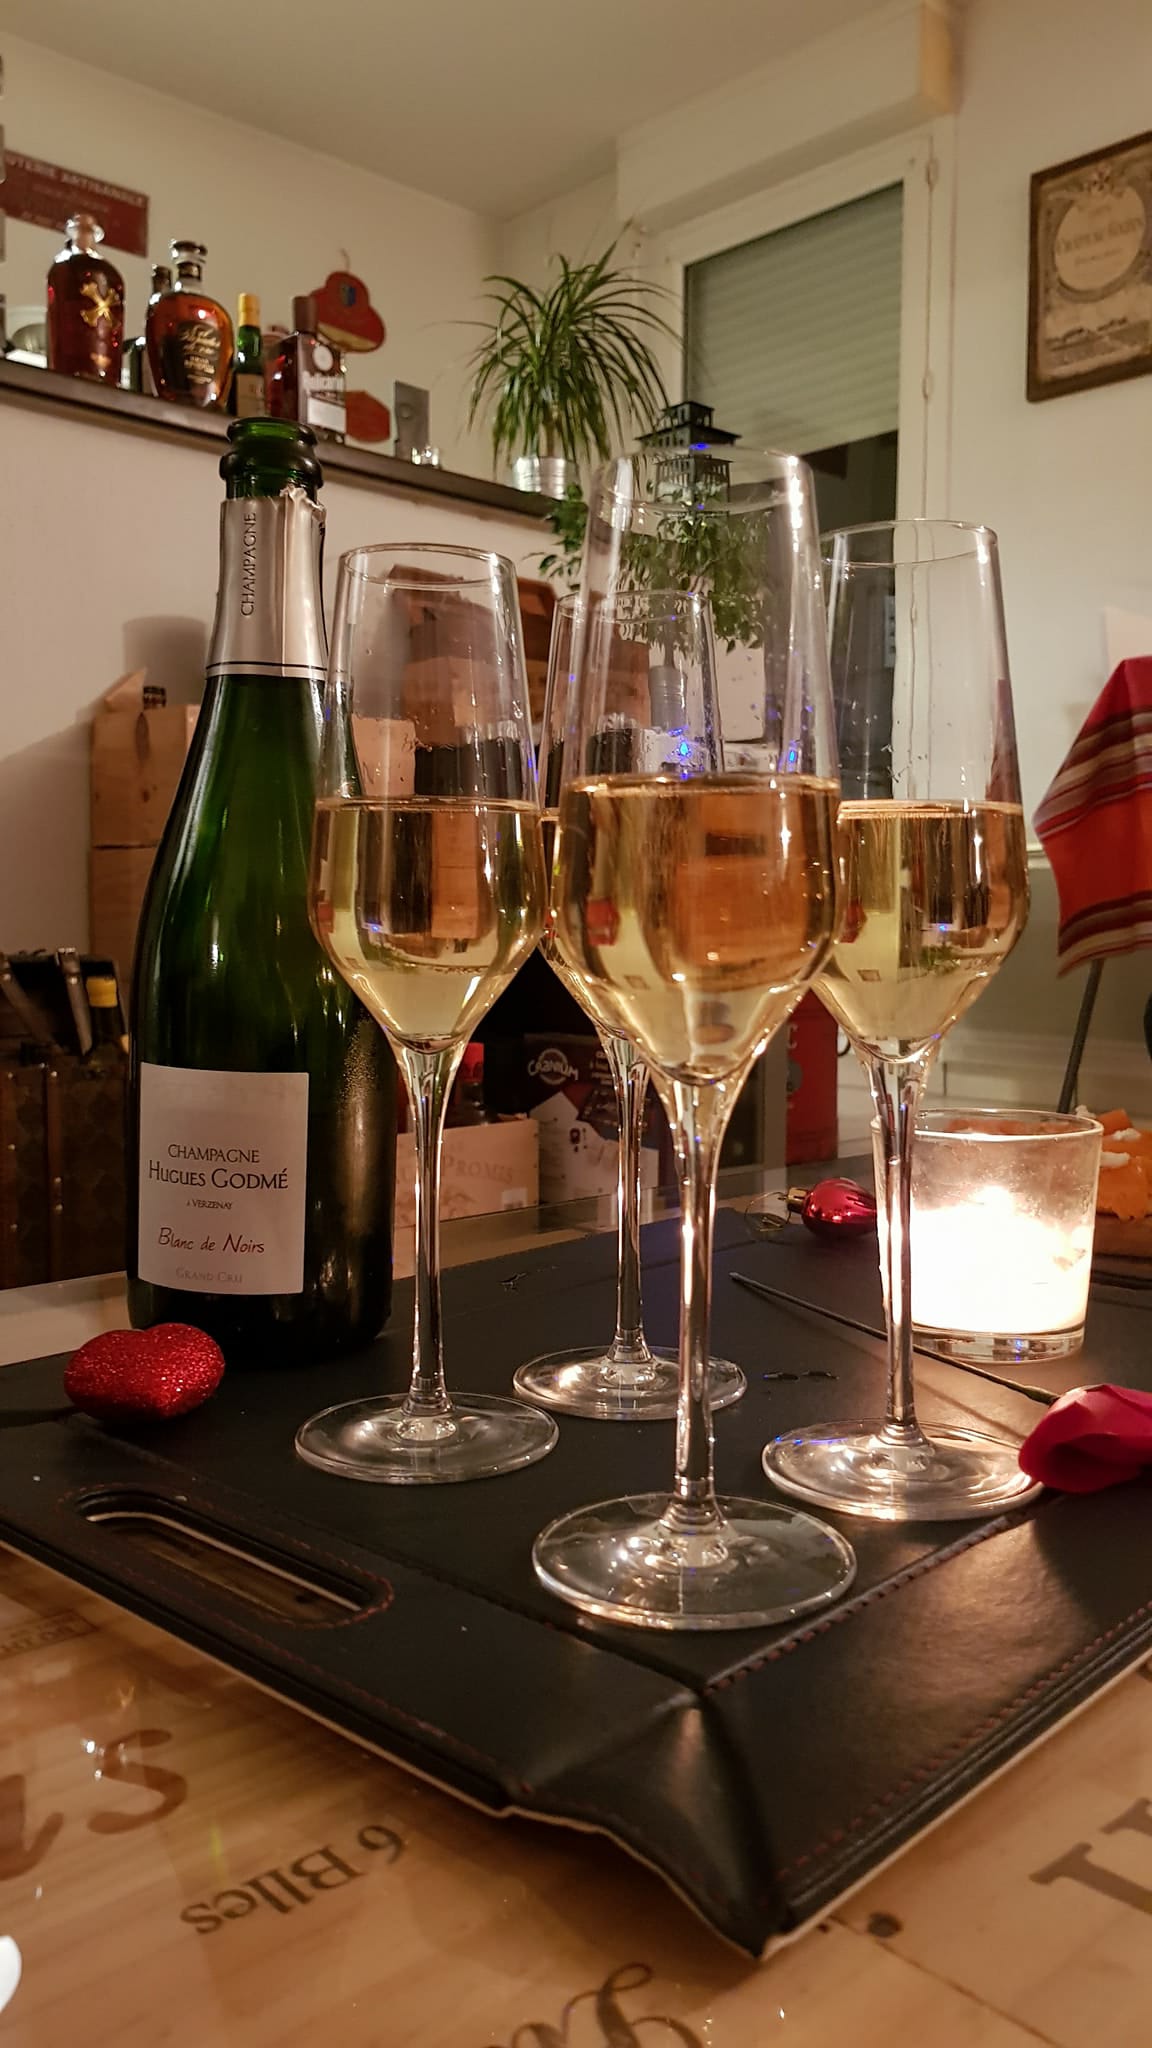 Champagne Hugues Godmé – Blanc de Noirs